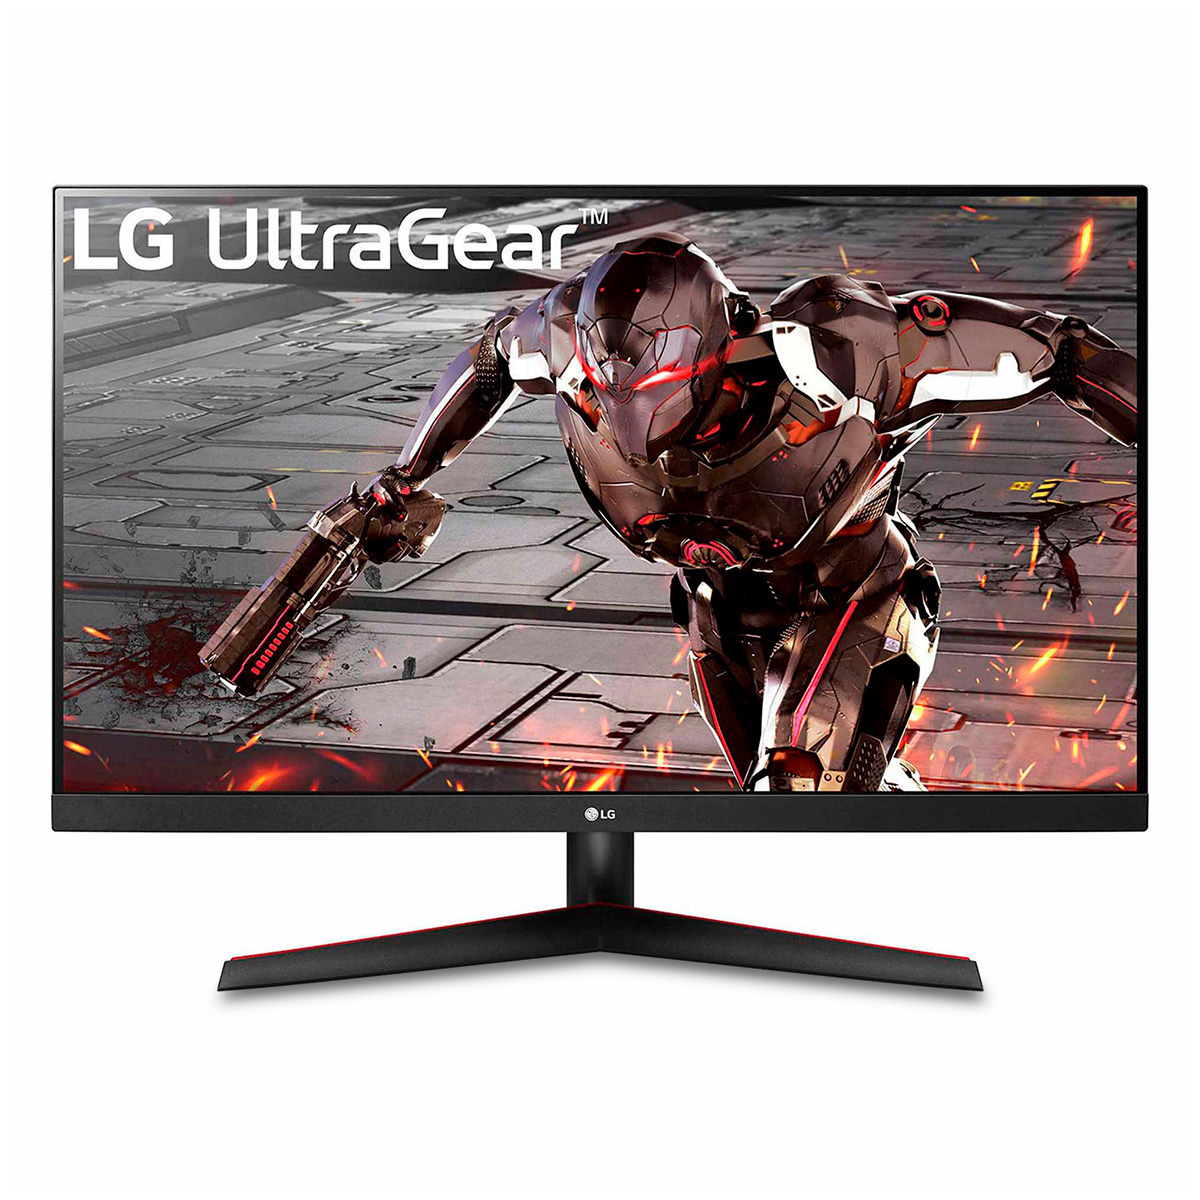 Monitor Gamer LG UltraGear 32GN600 de 31.5 Pulg-QHD con AMD FreeSync Premium